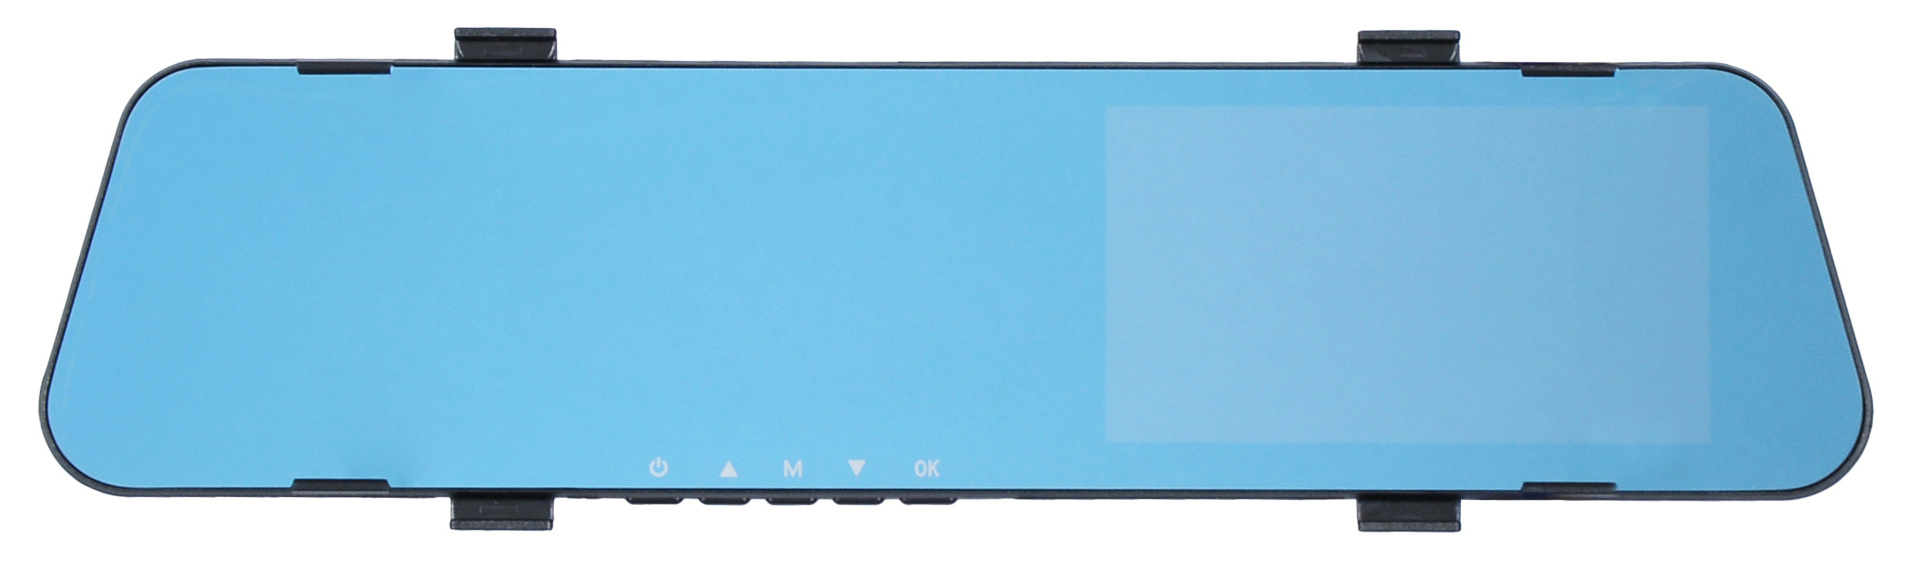 Видеорегистратор зеркало заднего вида SunWind SD-412 Duo, 2 камеры, 1920x1080 30 к/с, 4.5" 854x480